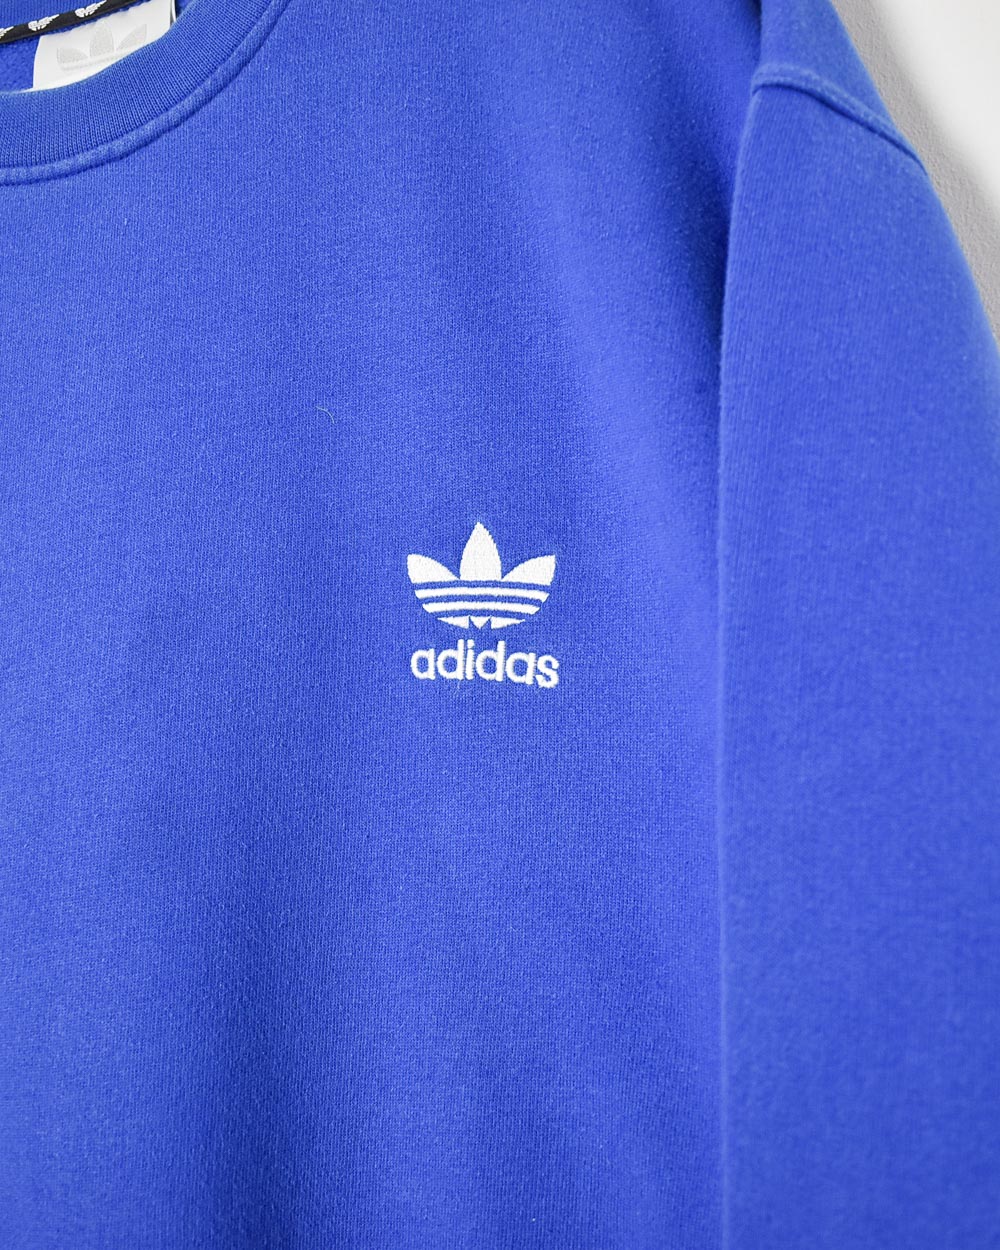 Blue Adidas Sweatshirt - Large